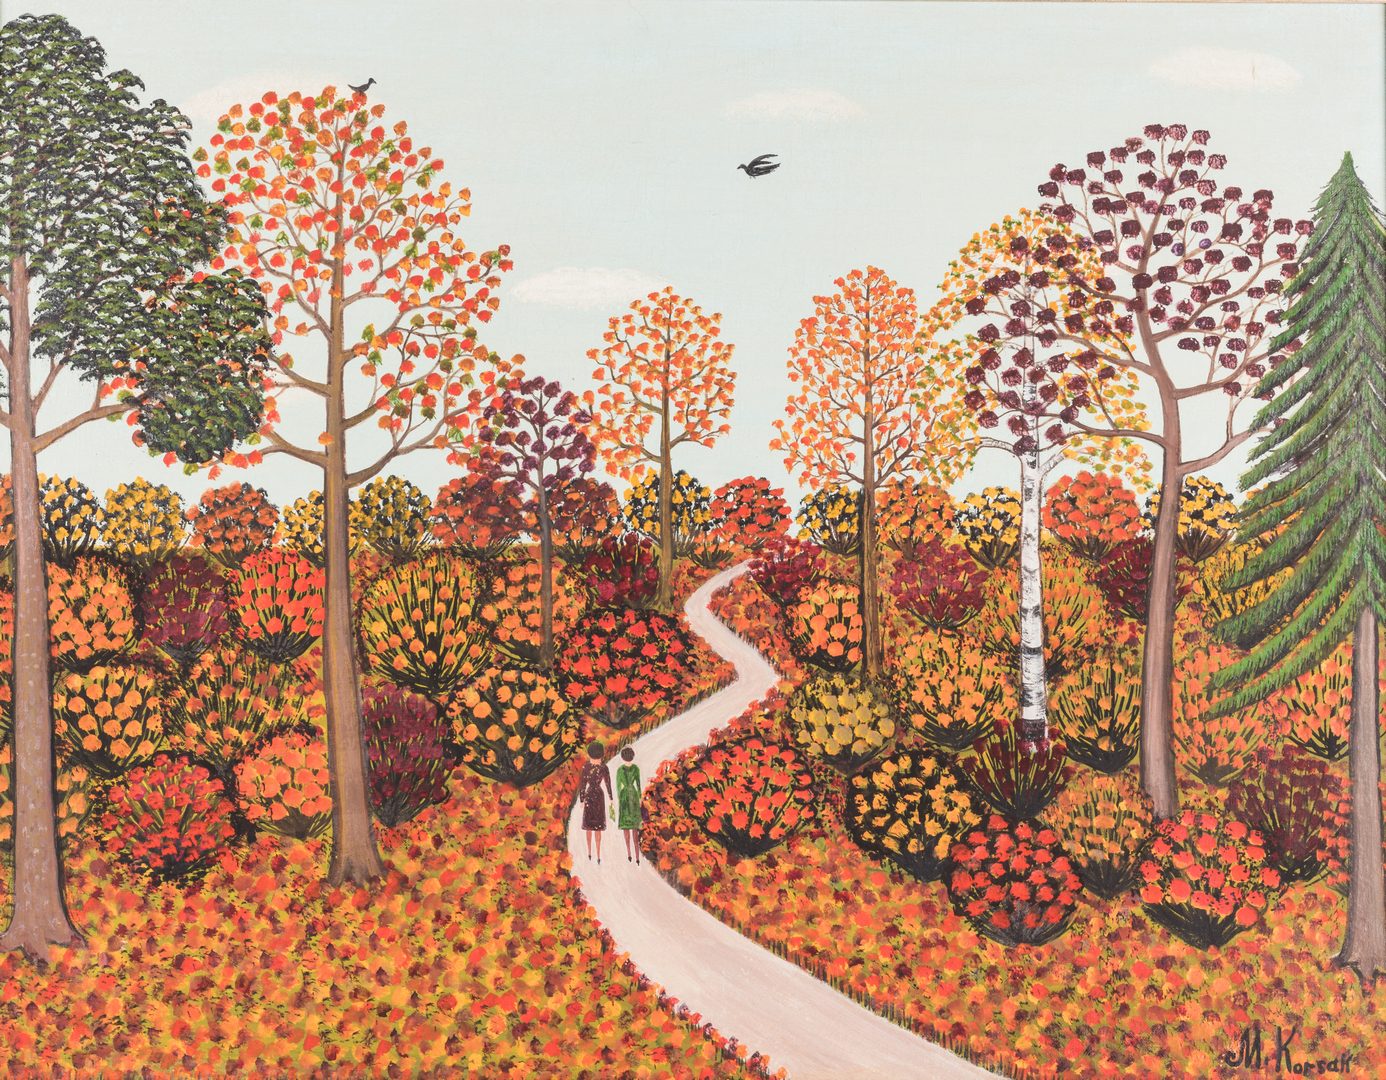 Lot 152: M. Korsak Painting – Autumn Landscape